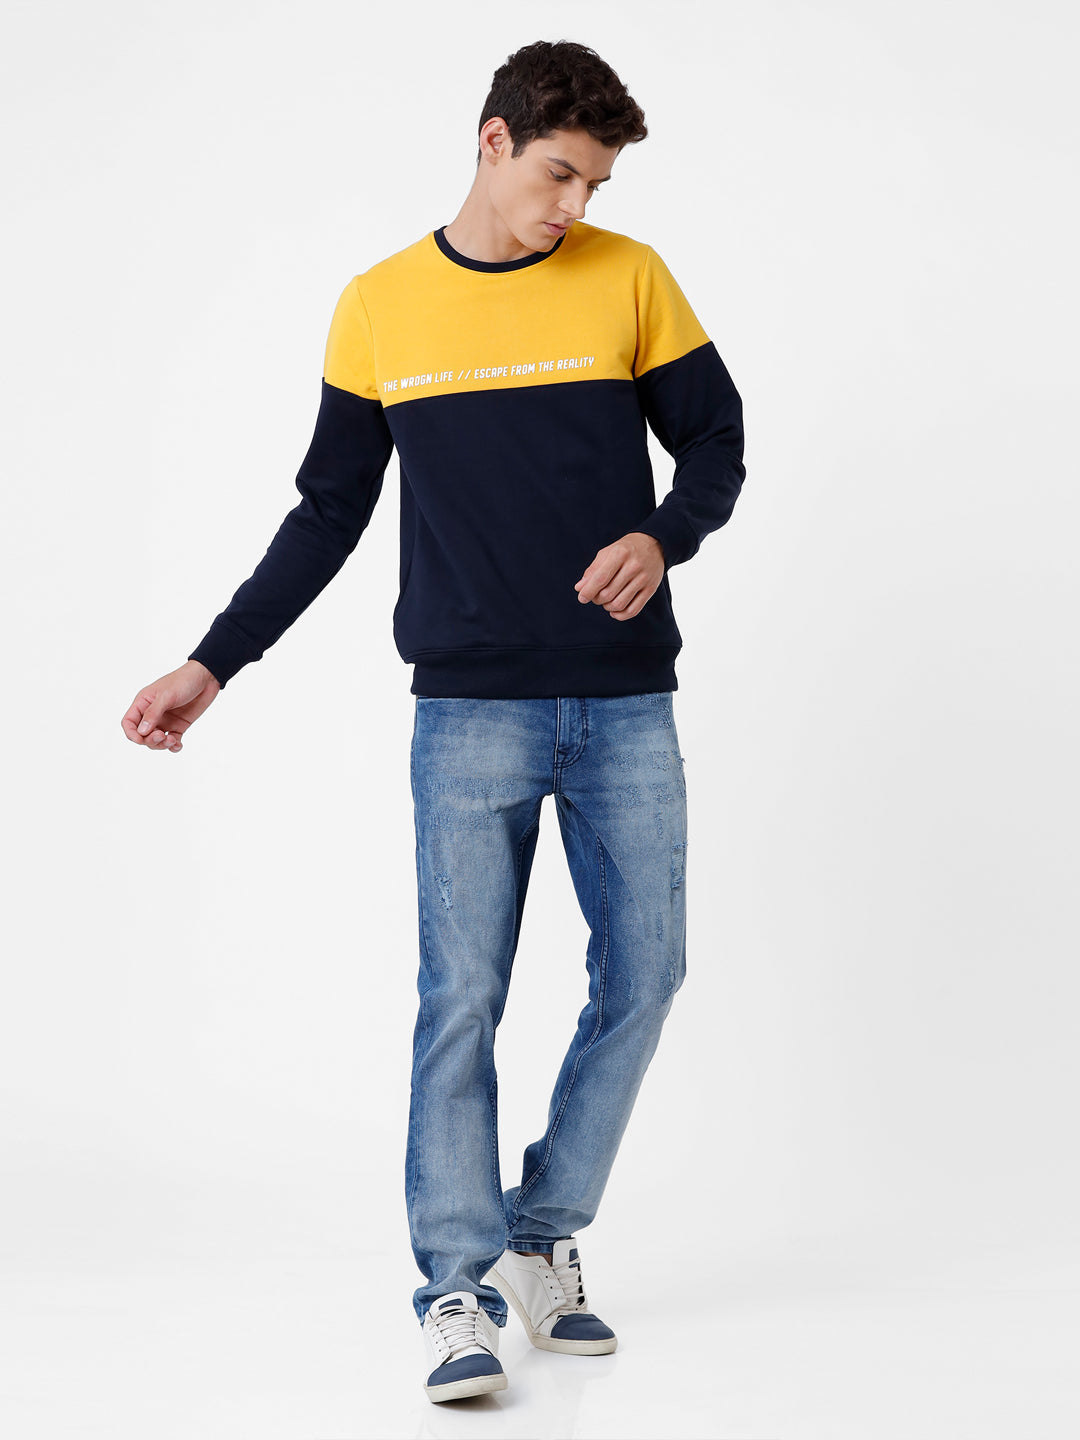 Wrogn Life Yellow & Navy Sweatshirt